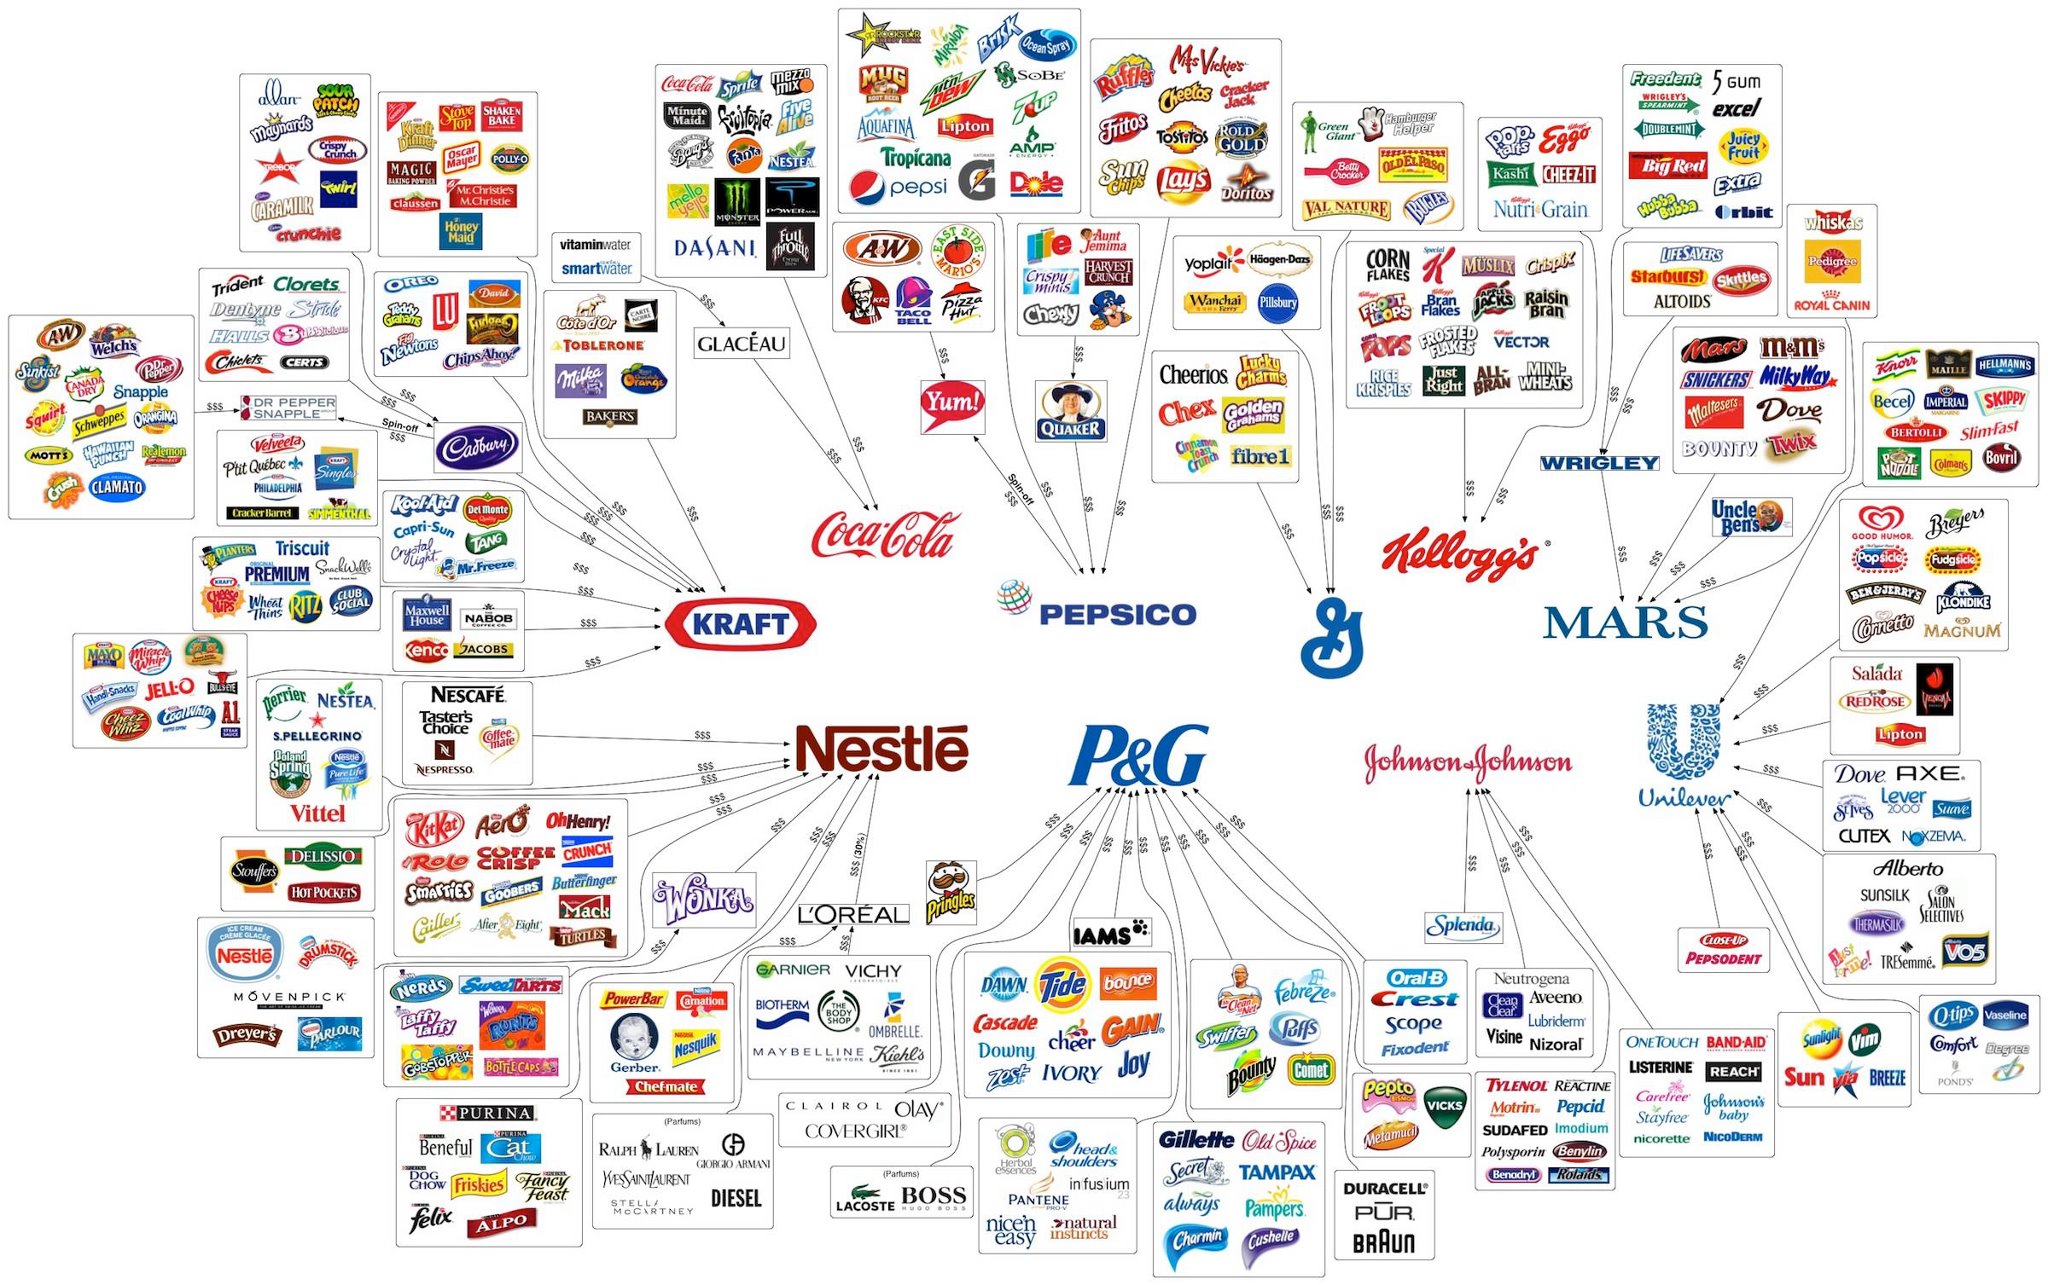 companies